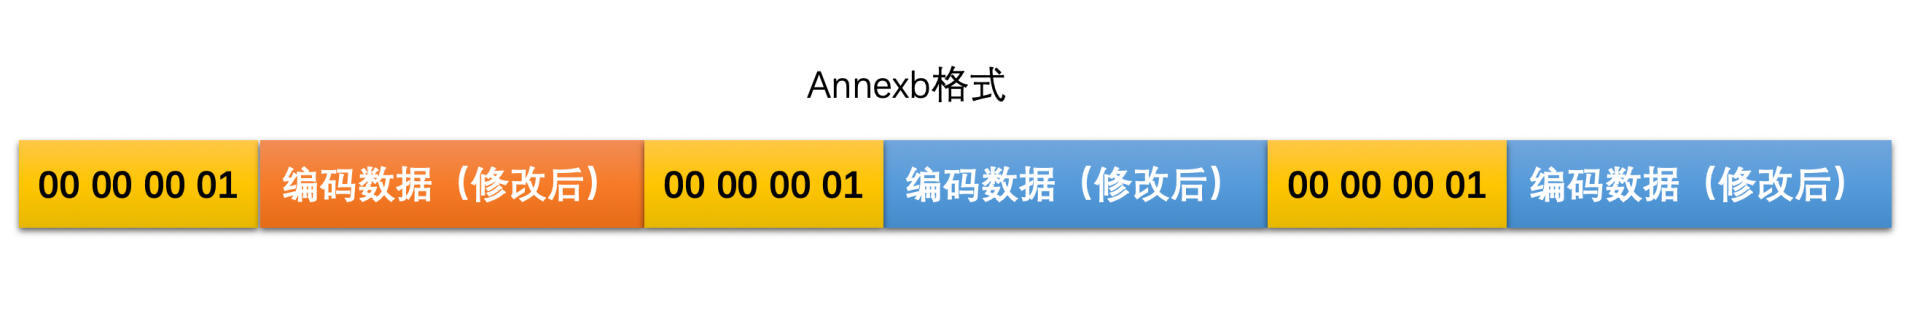 annexb格式